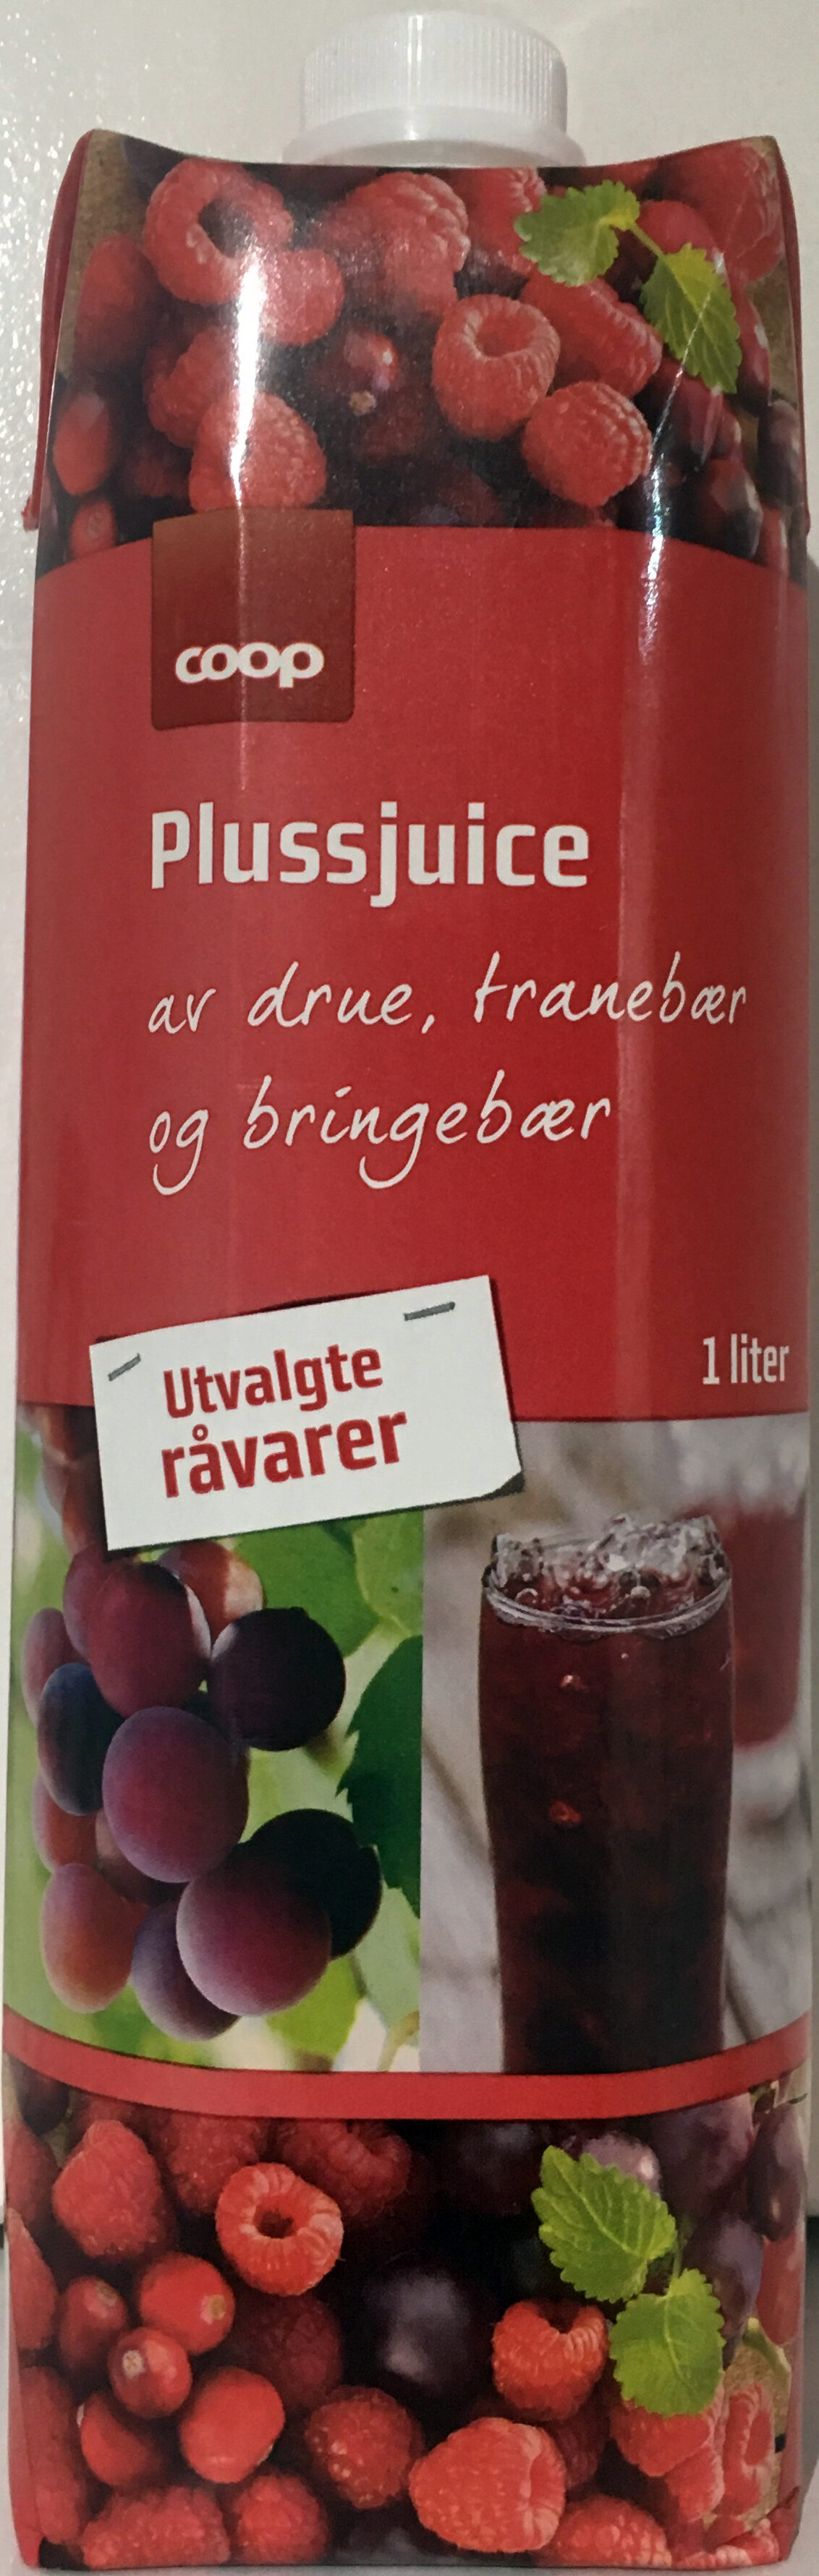 Plussjuice av drue, tranebær og bringebær - Produkt